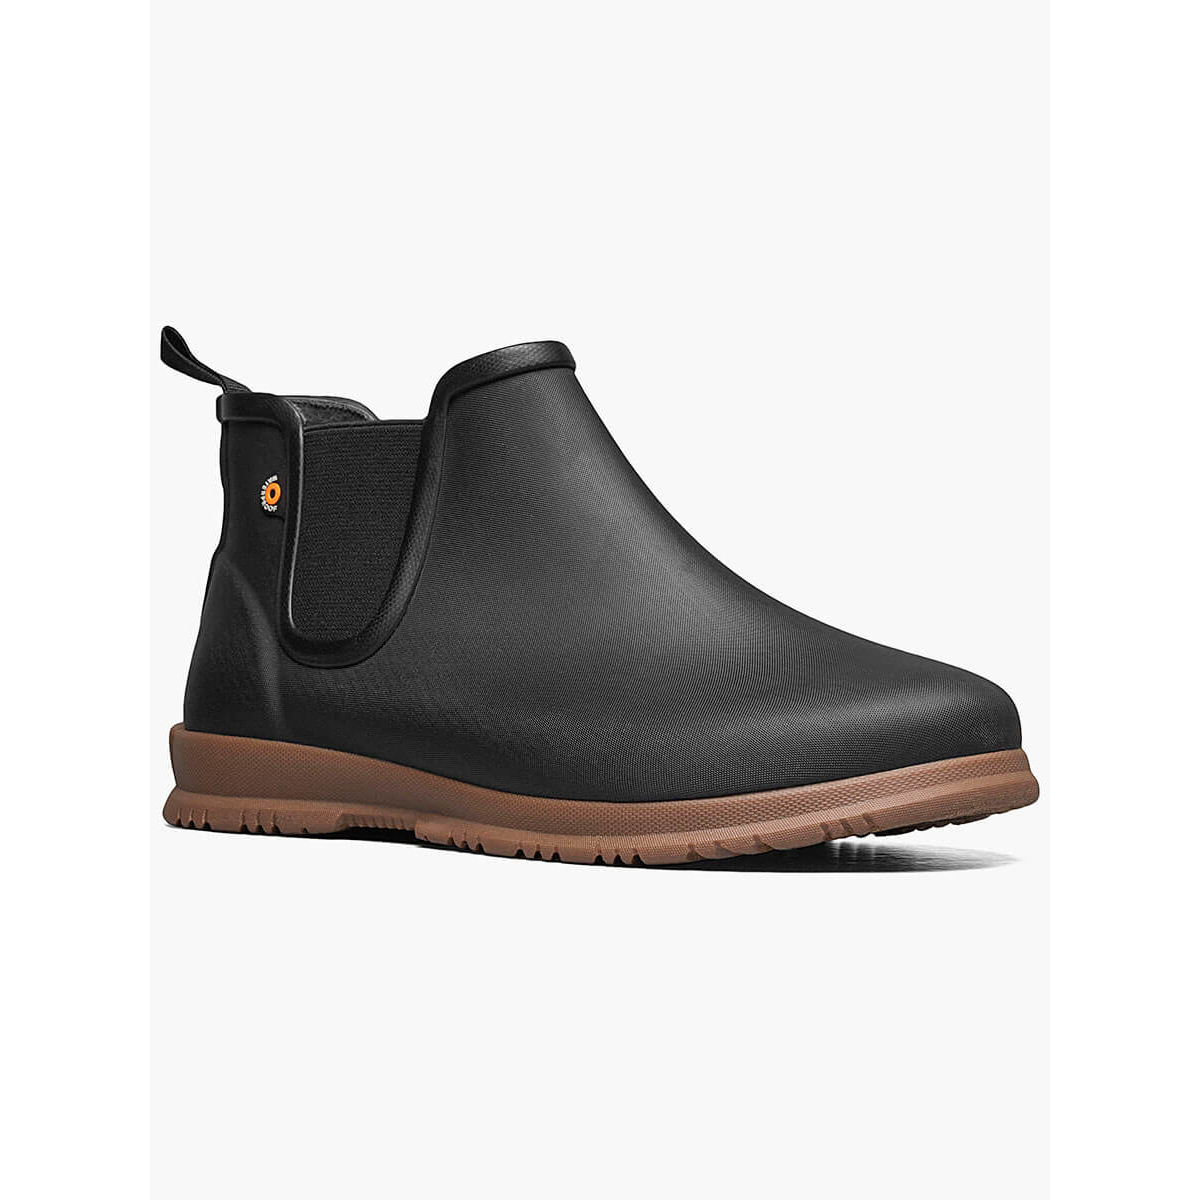 BOGS Women's Sweetpea Waterproof Slip On Rain Boots Black- 72198-001 - BLACK, 7 Wide